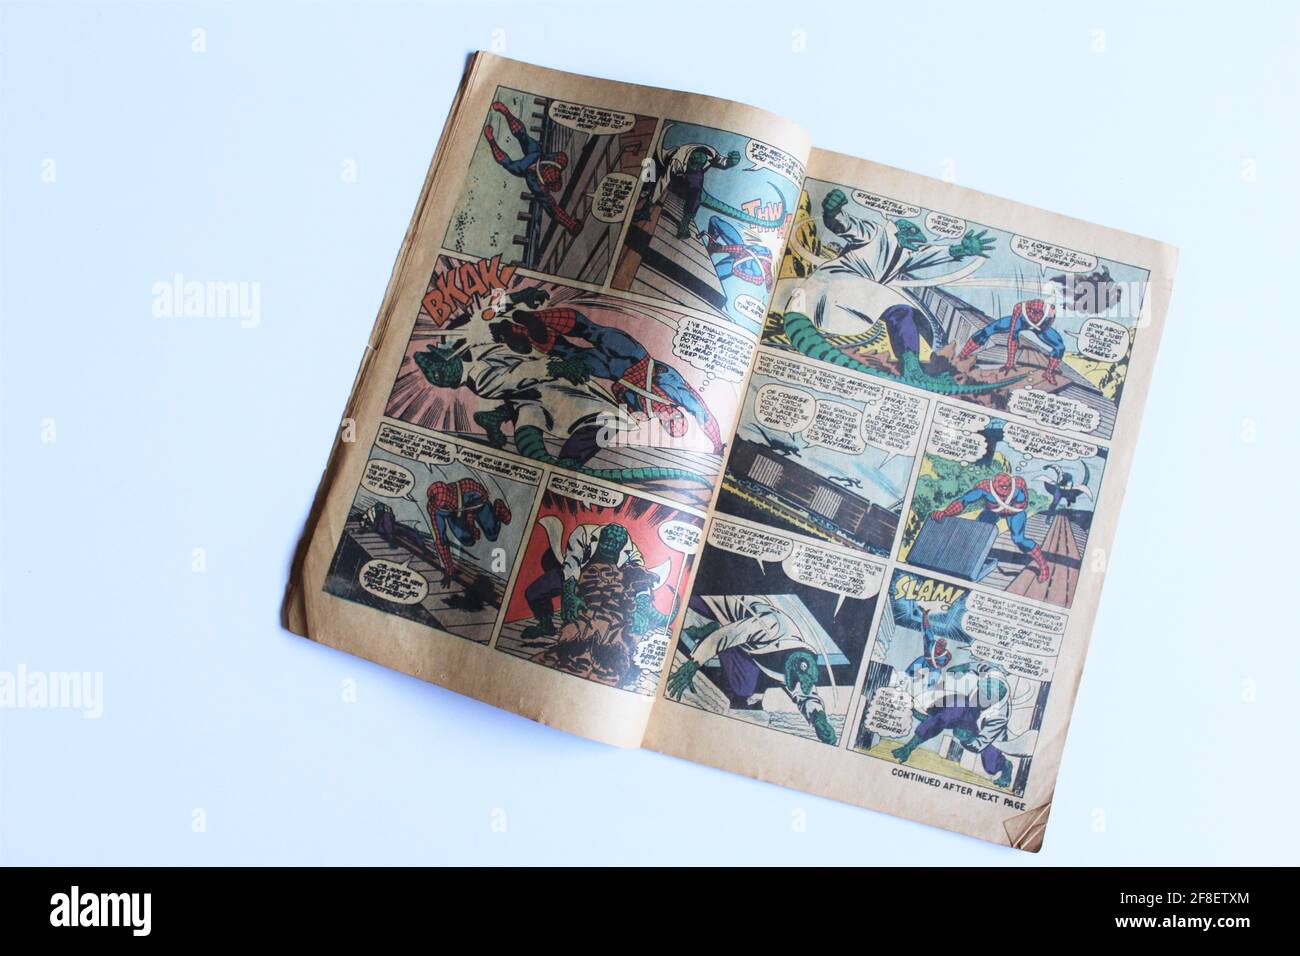 1971 Comicbook The Amazing Spiderman! Spidey éclate ! Écrit par Stan Lee. Marvel Tales est le titre de la série de bandes dessinées publiée par Marvel Banque D'Images